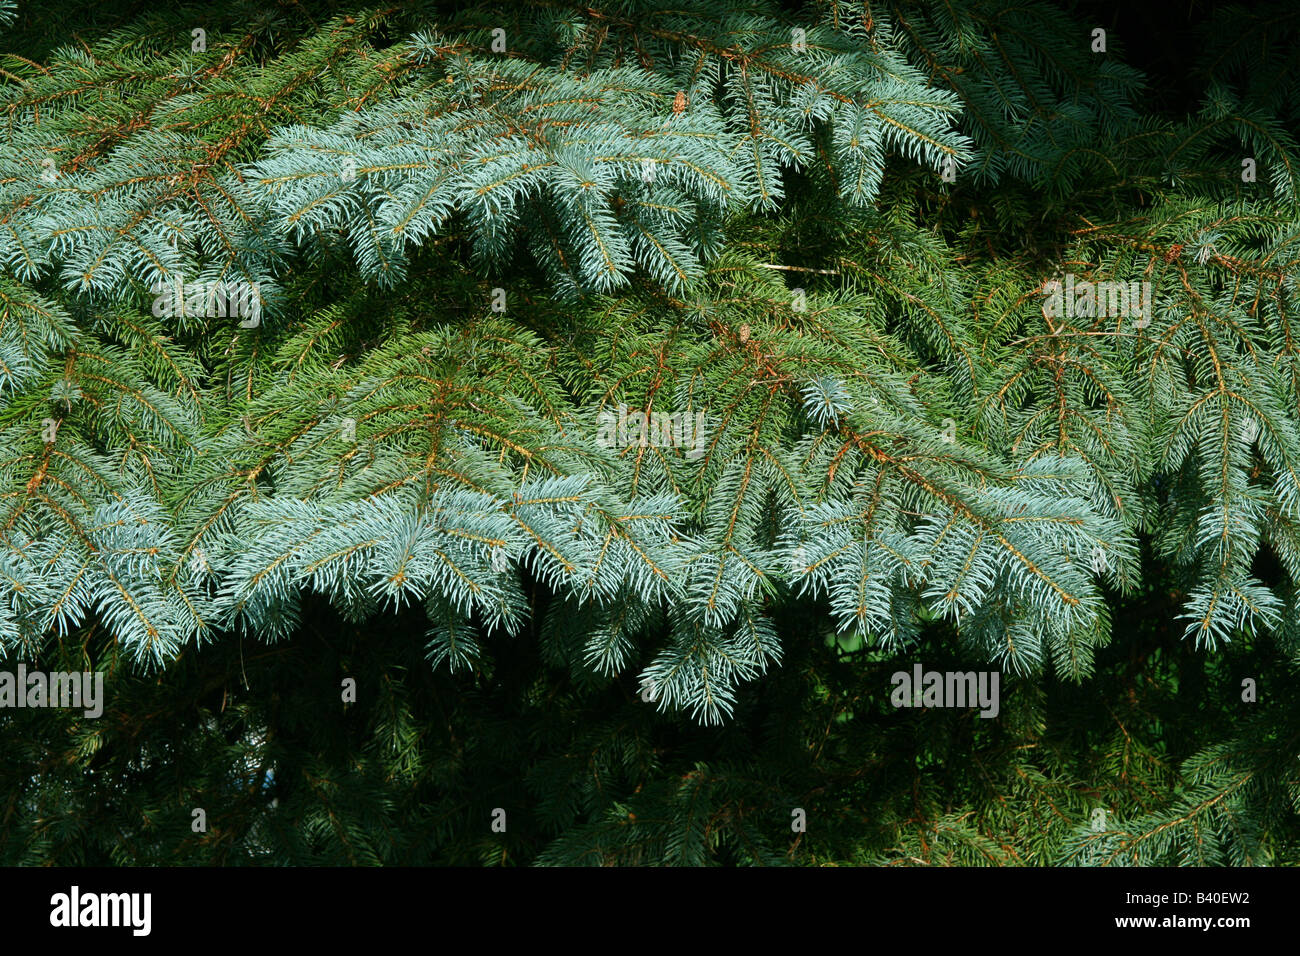 La nouvelle croissance de l'épinette bleue Tree ( Picea pungens ) Amérique du Nord Banque D'Images